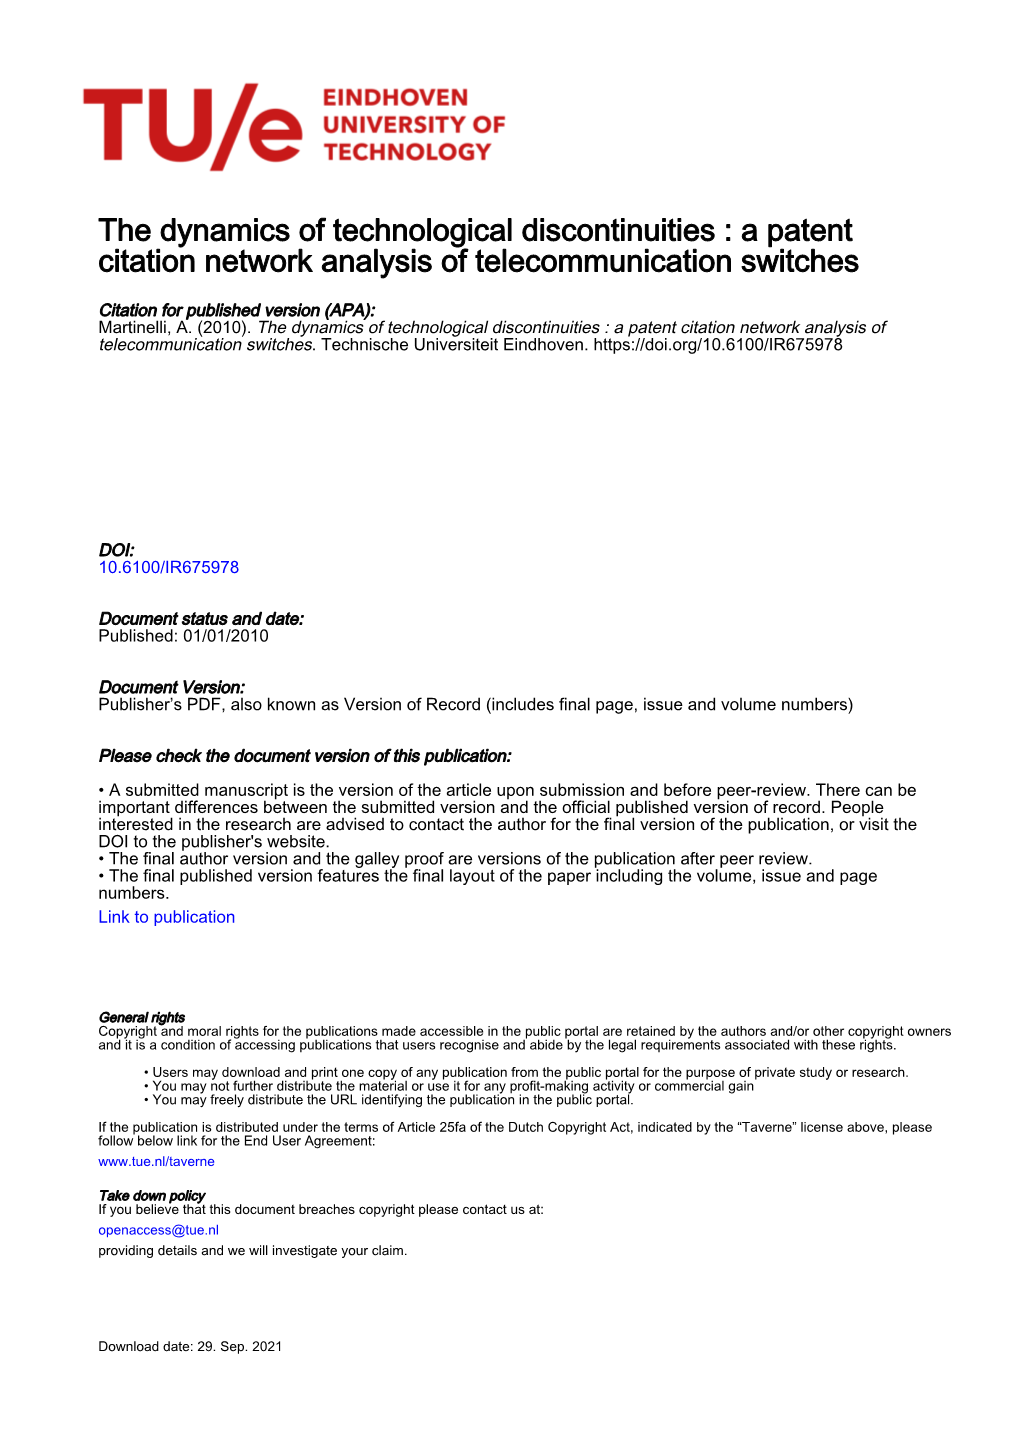 A Patent Citation Network Analysis of Telecommunication Switches